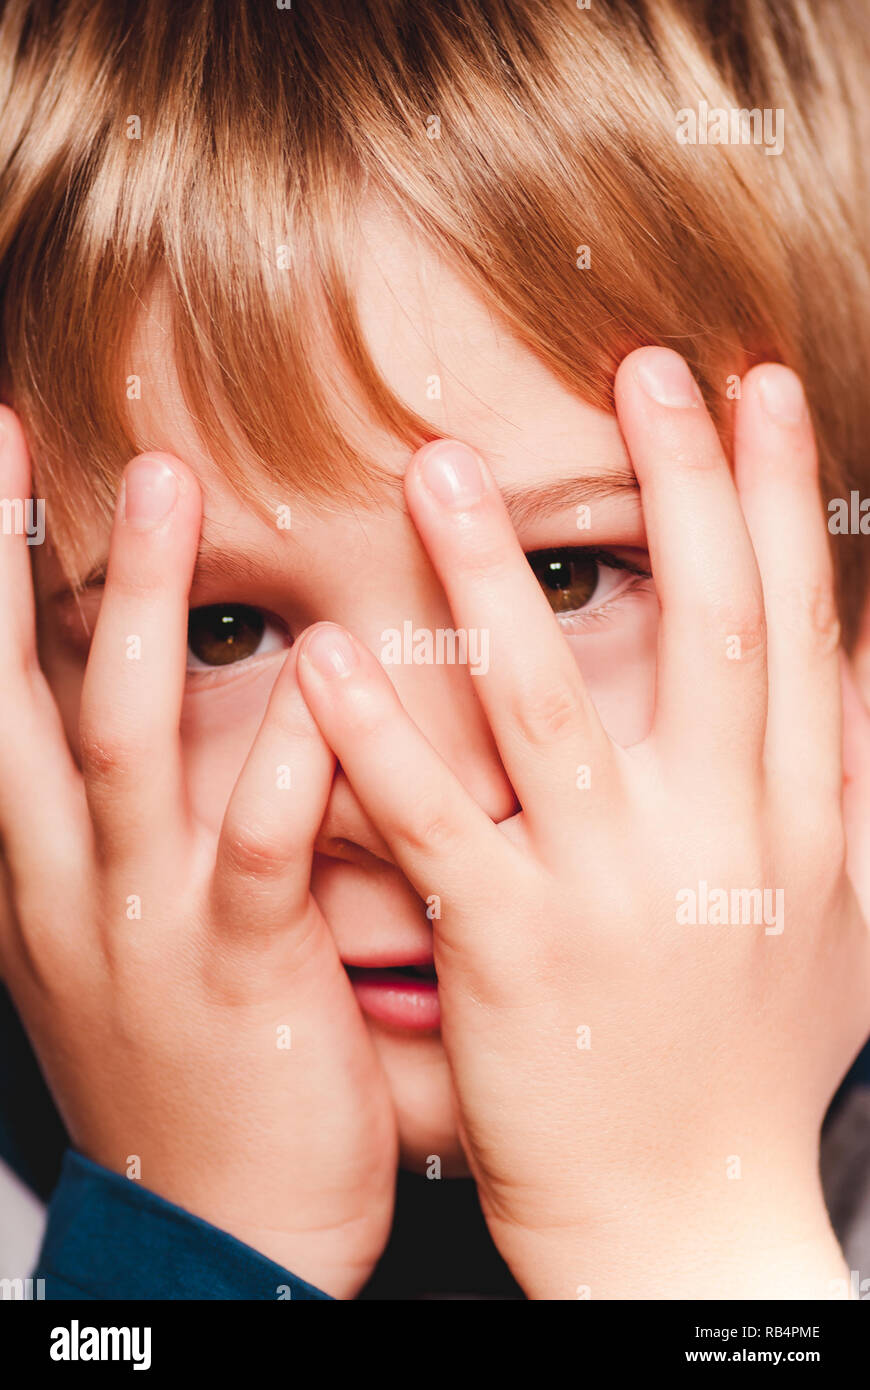 Petit enfant avec les mains sur le visage - connexions sensorielles Banque D'Images